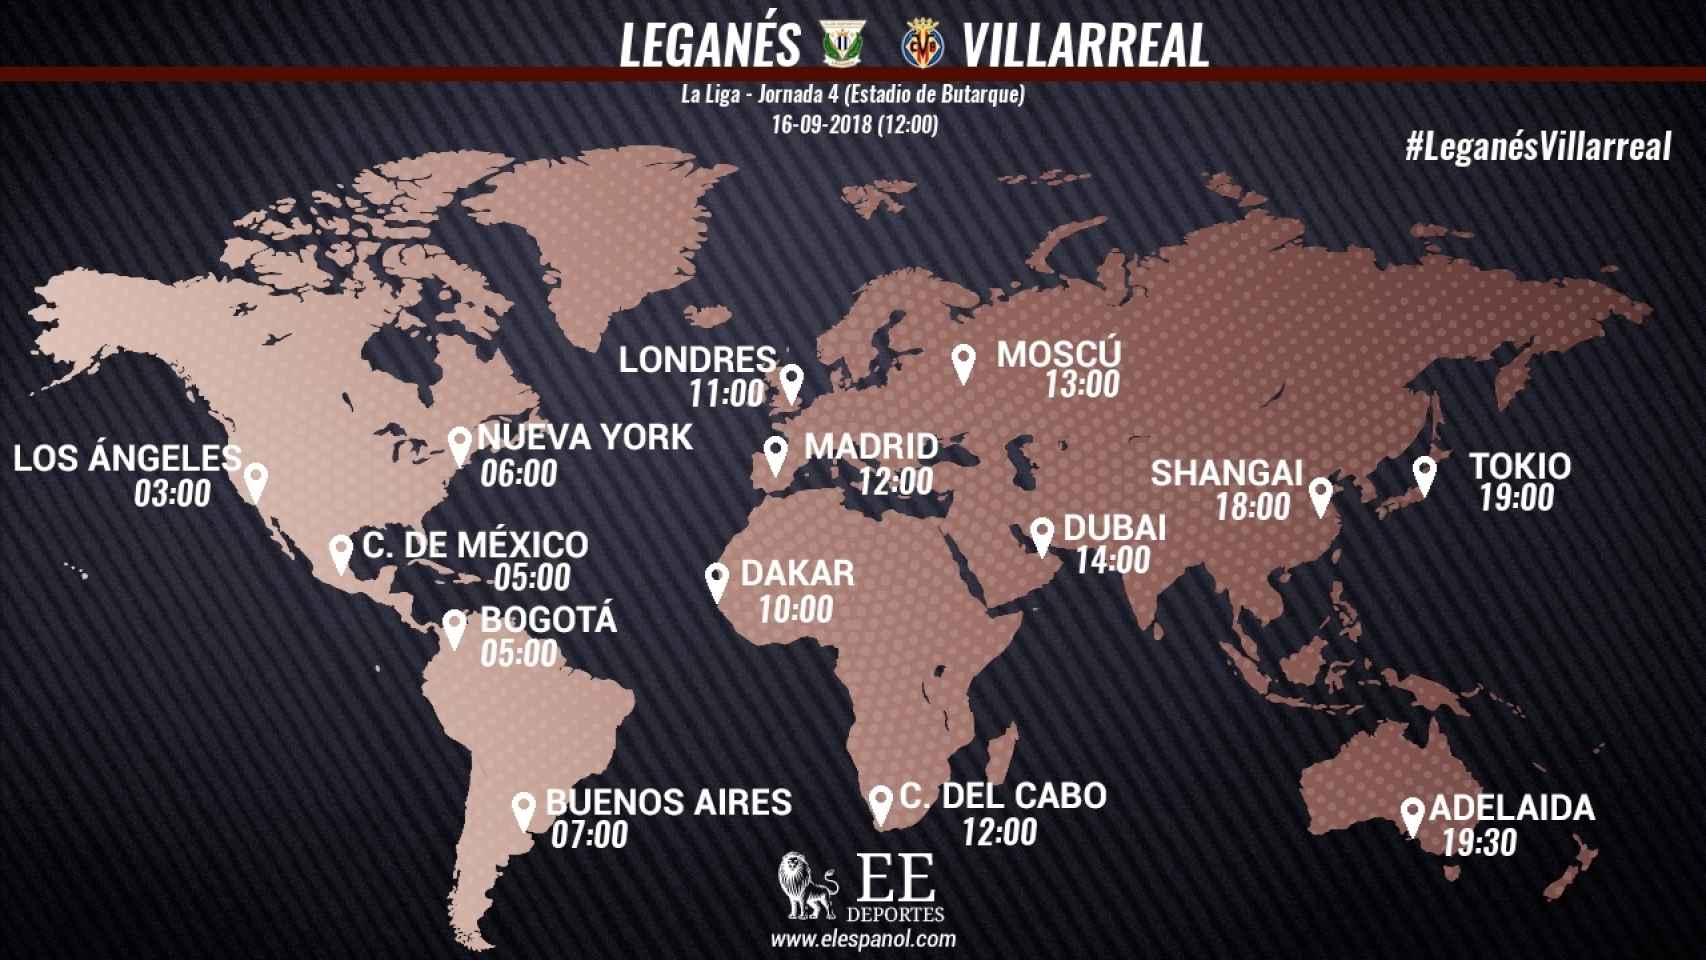 Leganés - Villarreal